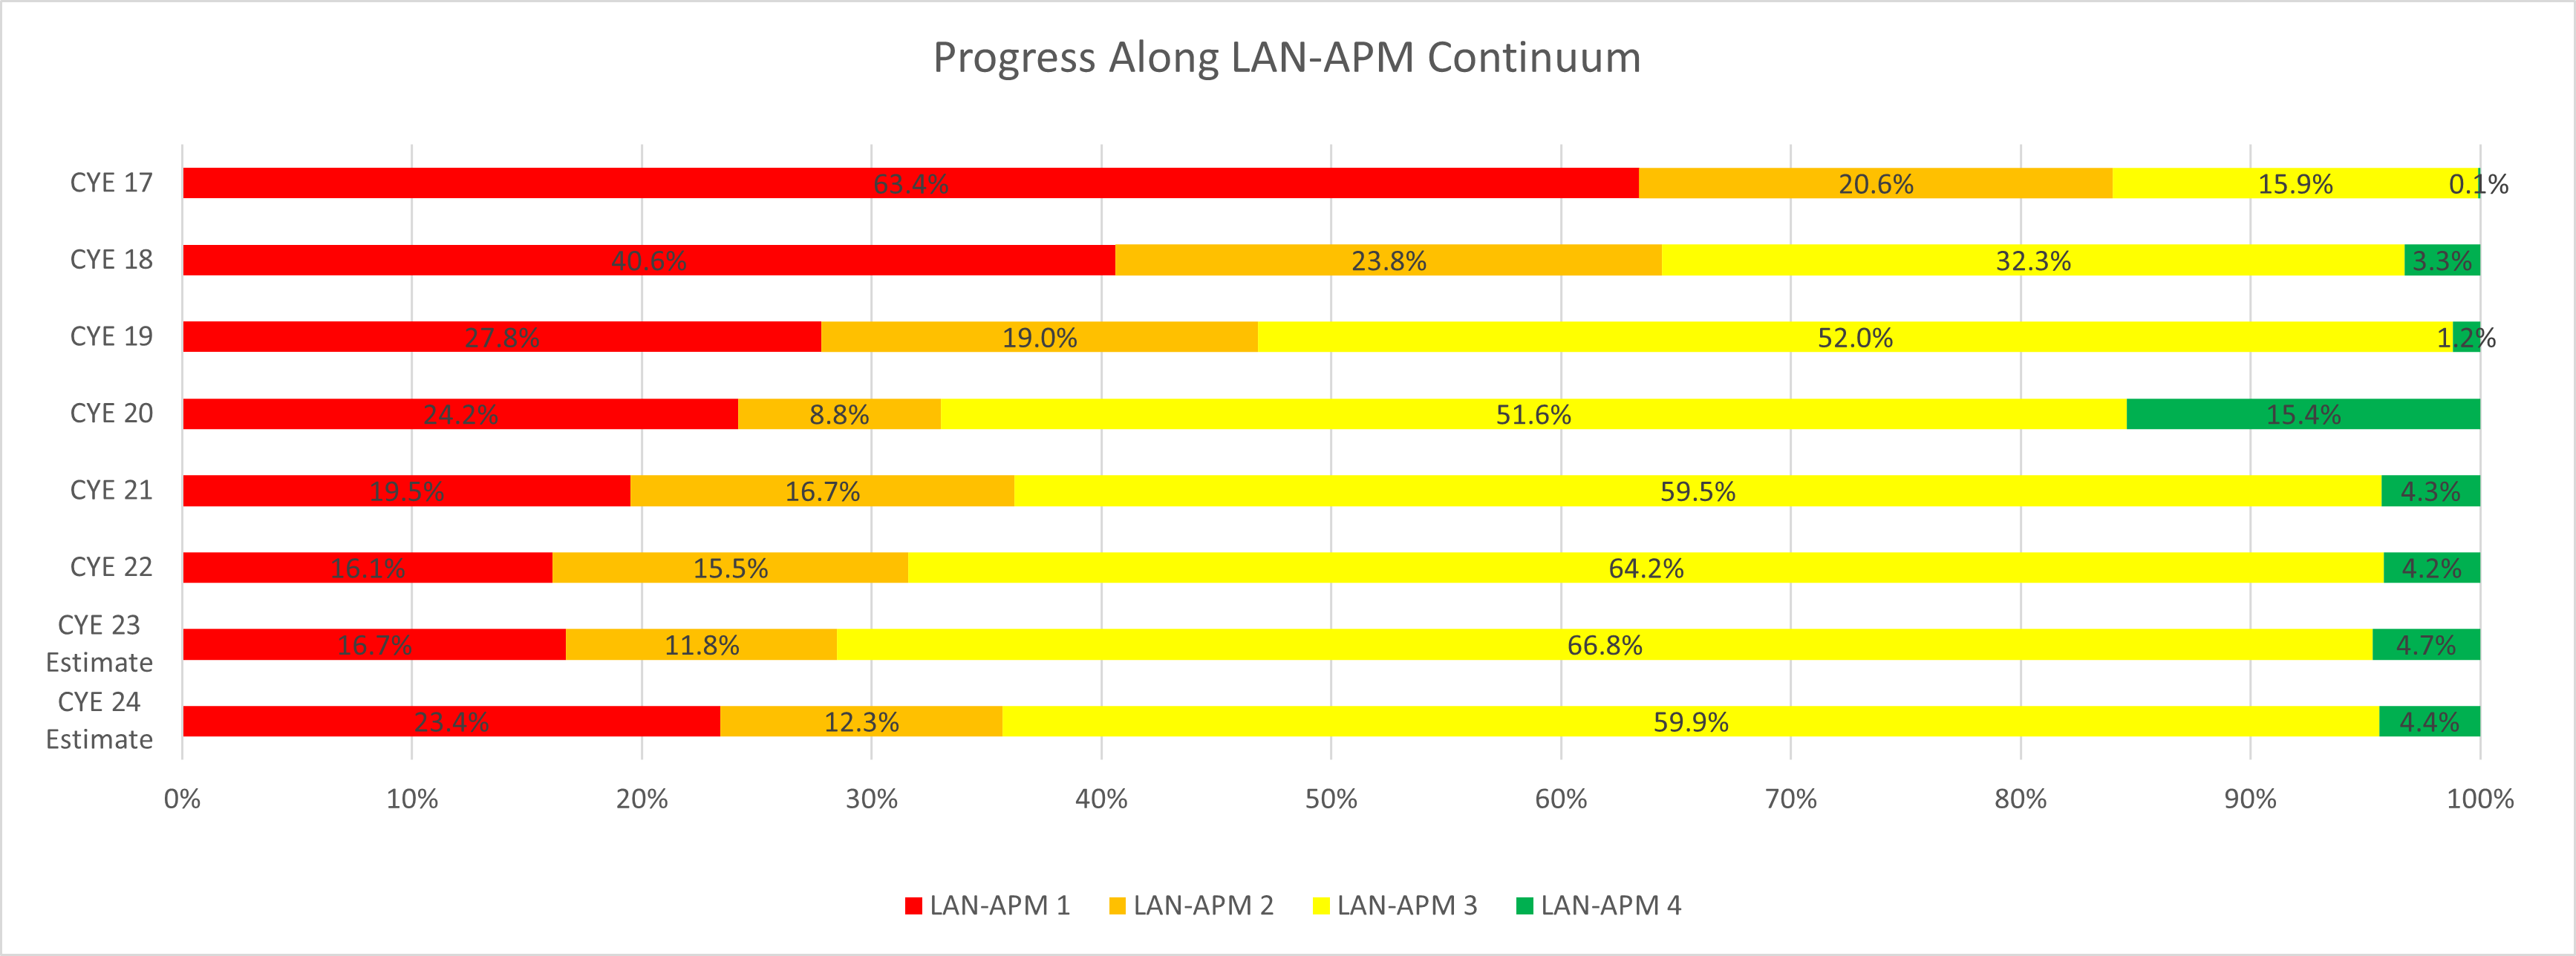 Column CYE	LAN-APM 1	LAN-APM 2	LAN-APM 3	LAN-APM 4	VBP Arrangments,CYE 24 Estimate	23.4%	12.3%	59.9%	4.4%	76.6%,CYE 23 Estimate	16.7%	11.8%	66.8%	4.7%	83.3%,CYE 22	16.1%	15.5%	64.2%	4.2%	83.9%,CYE 21	19.5%	16.7%	59.5%	4.3%	80.5%,CYE 20	24.2%	8.8%	51.6%	15.4%	75.8%,CYE 19	27.8%	19.0%	52.0%	1.2%	72.2%,CYE 18	40.6%	23.8%	32.3%	3.3%	59.4%,CYE 17	63.4%	20.6%	15.9%	0.1%	36.6%
